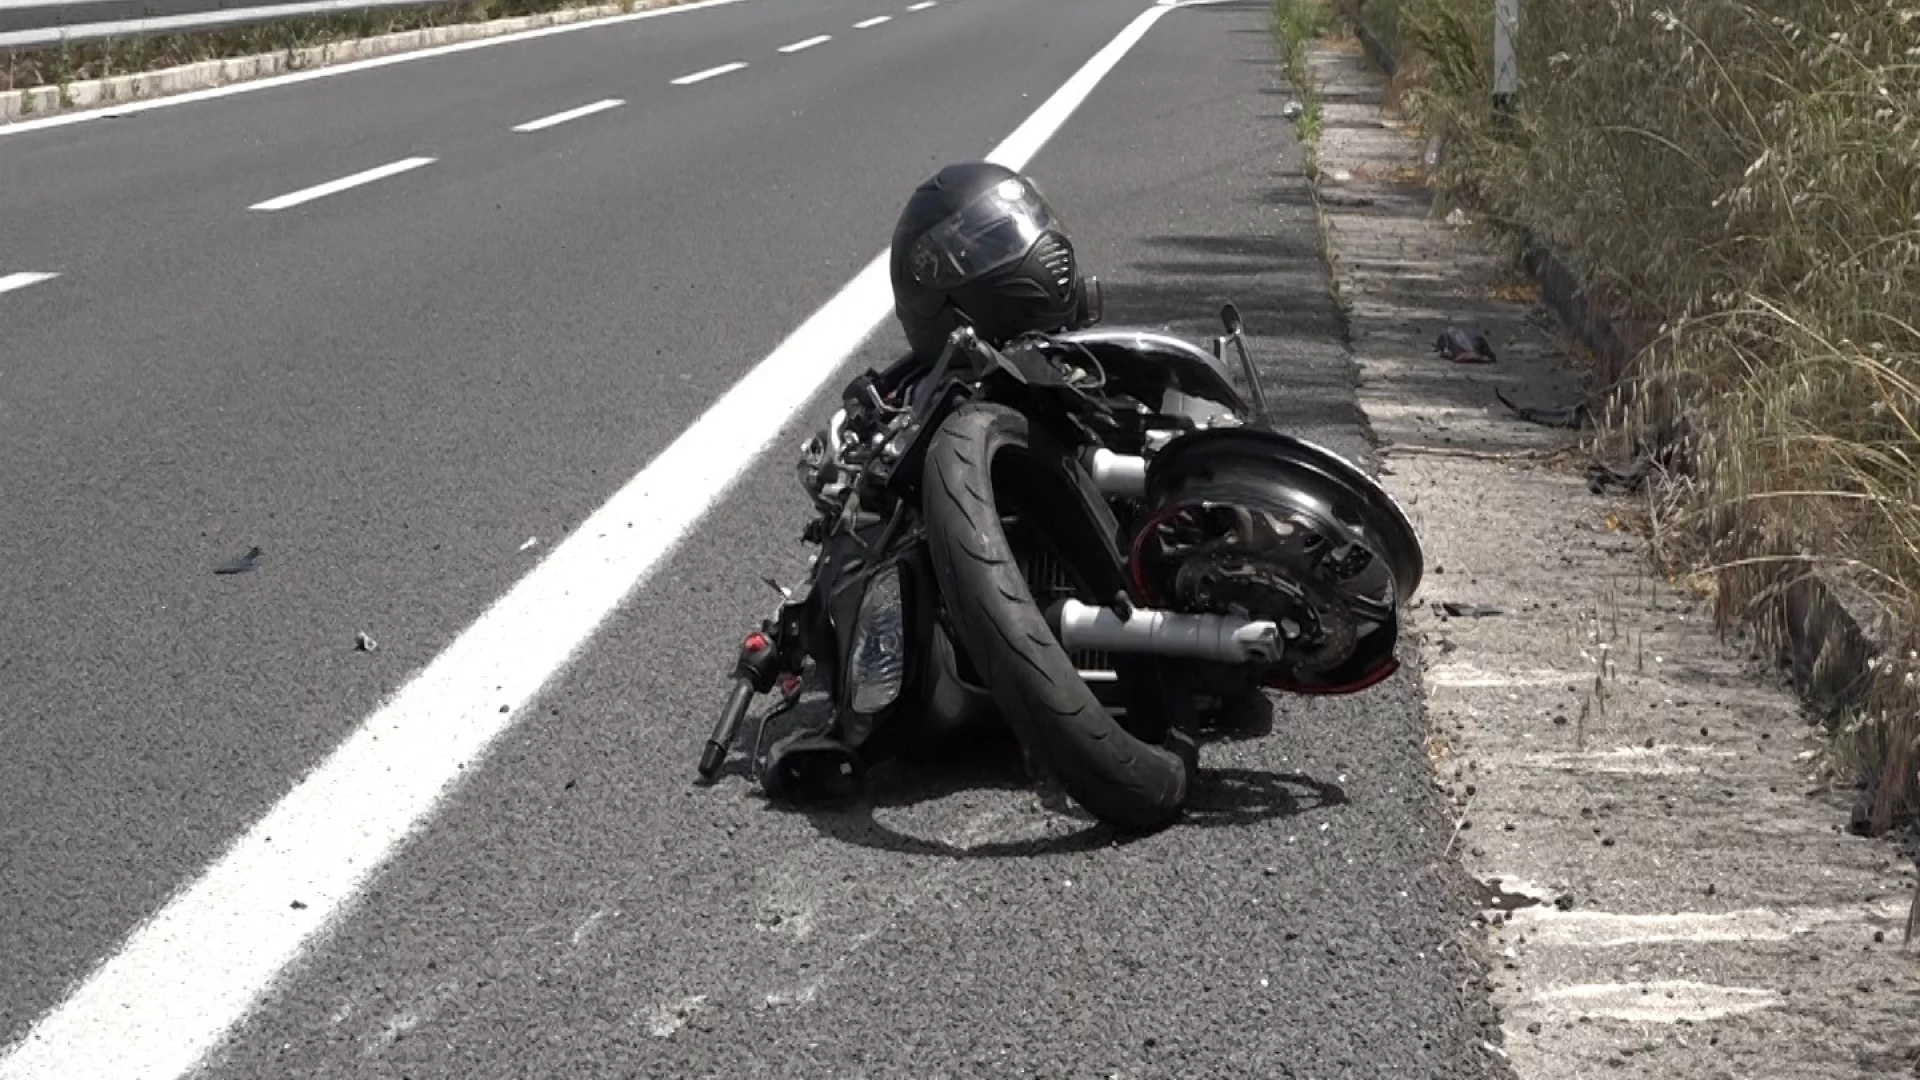 Venafro: brutto incidente per un motociclista sulla variante. Soccorso in atto.